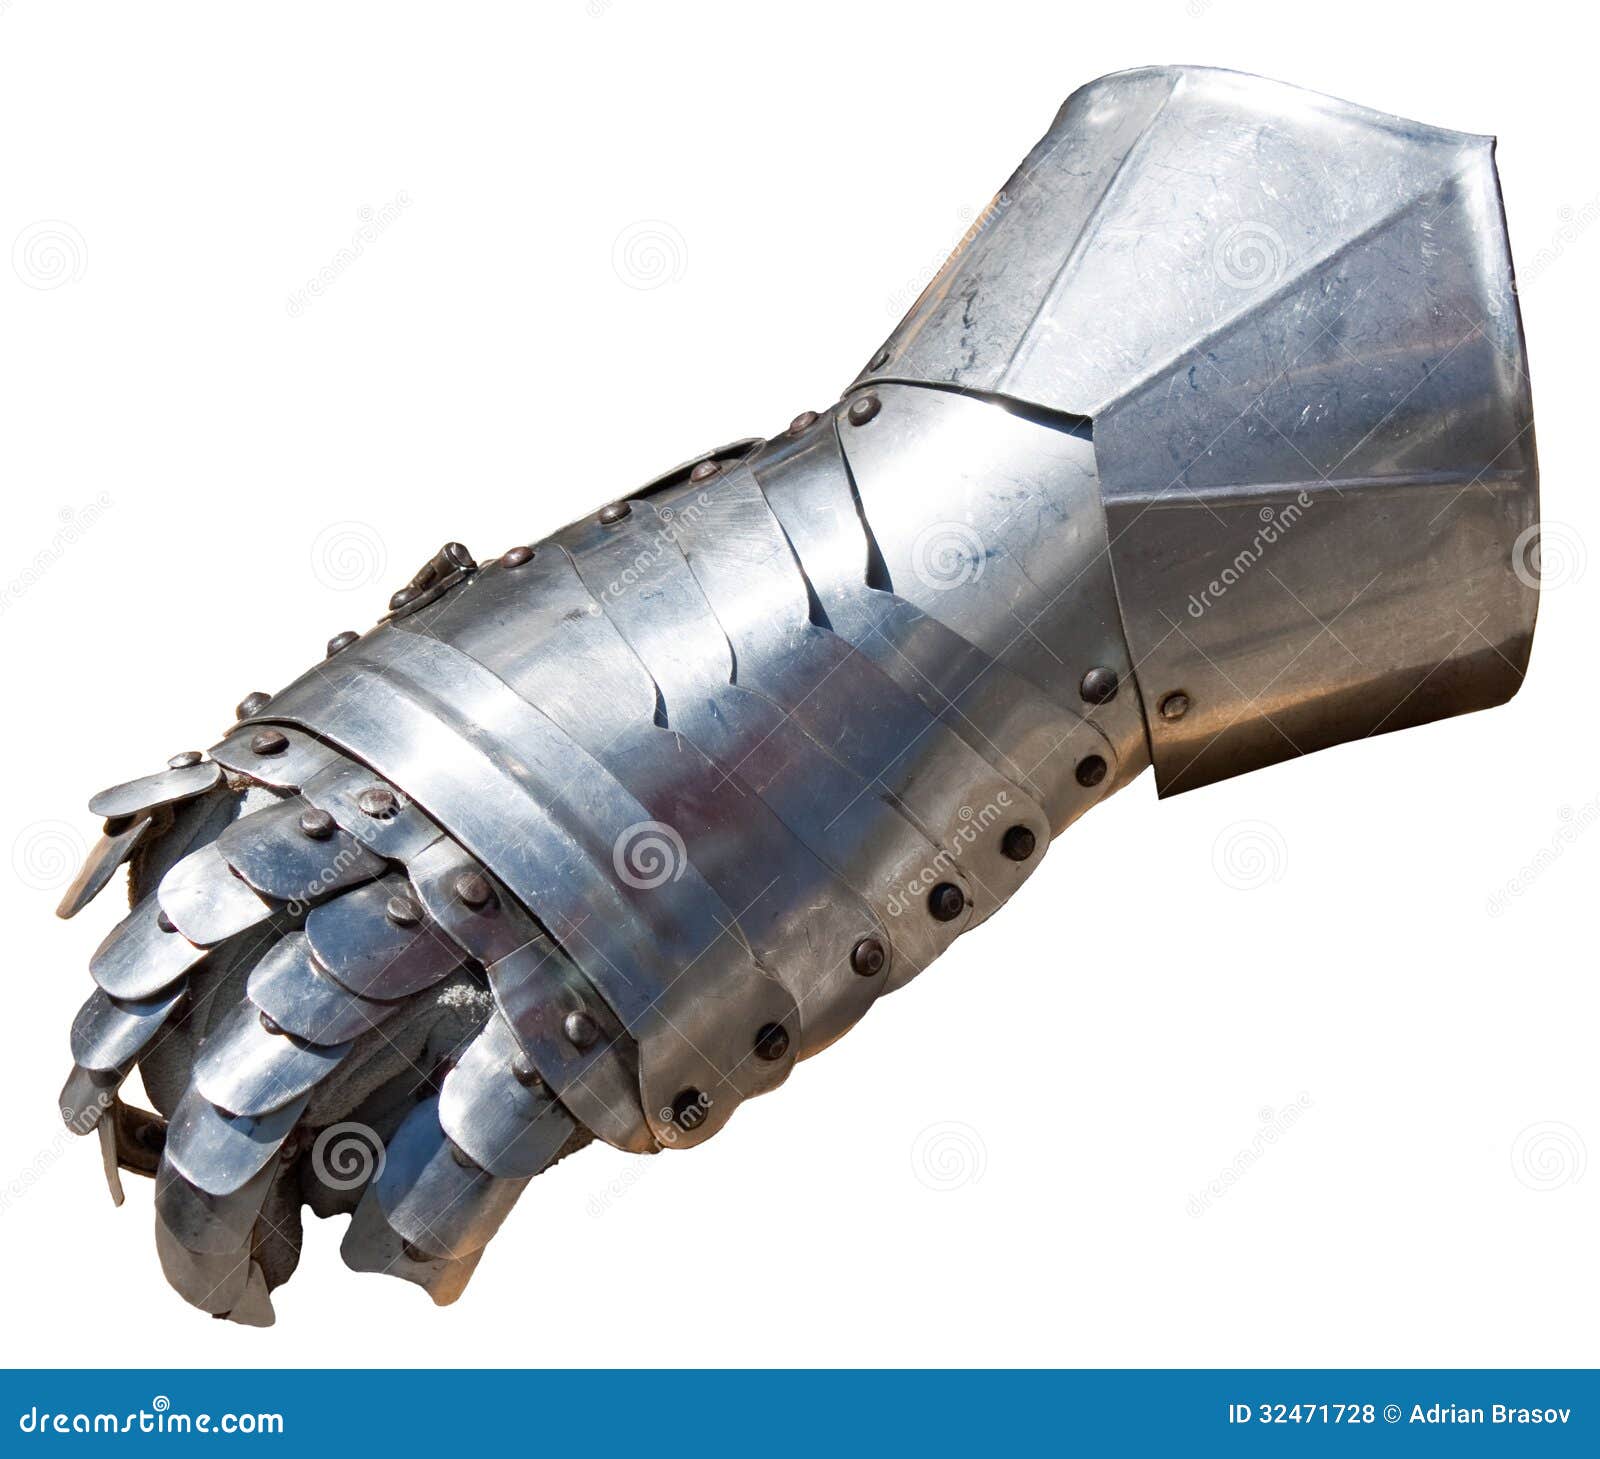 armor glove